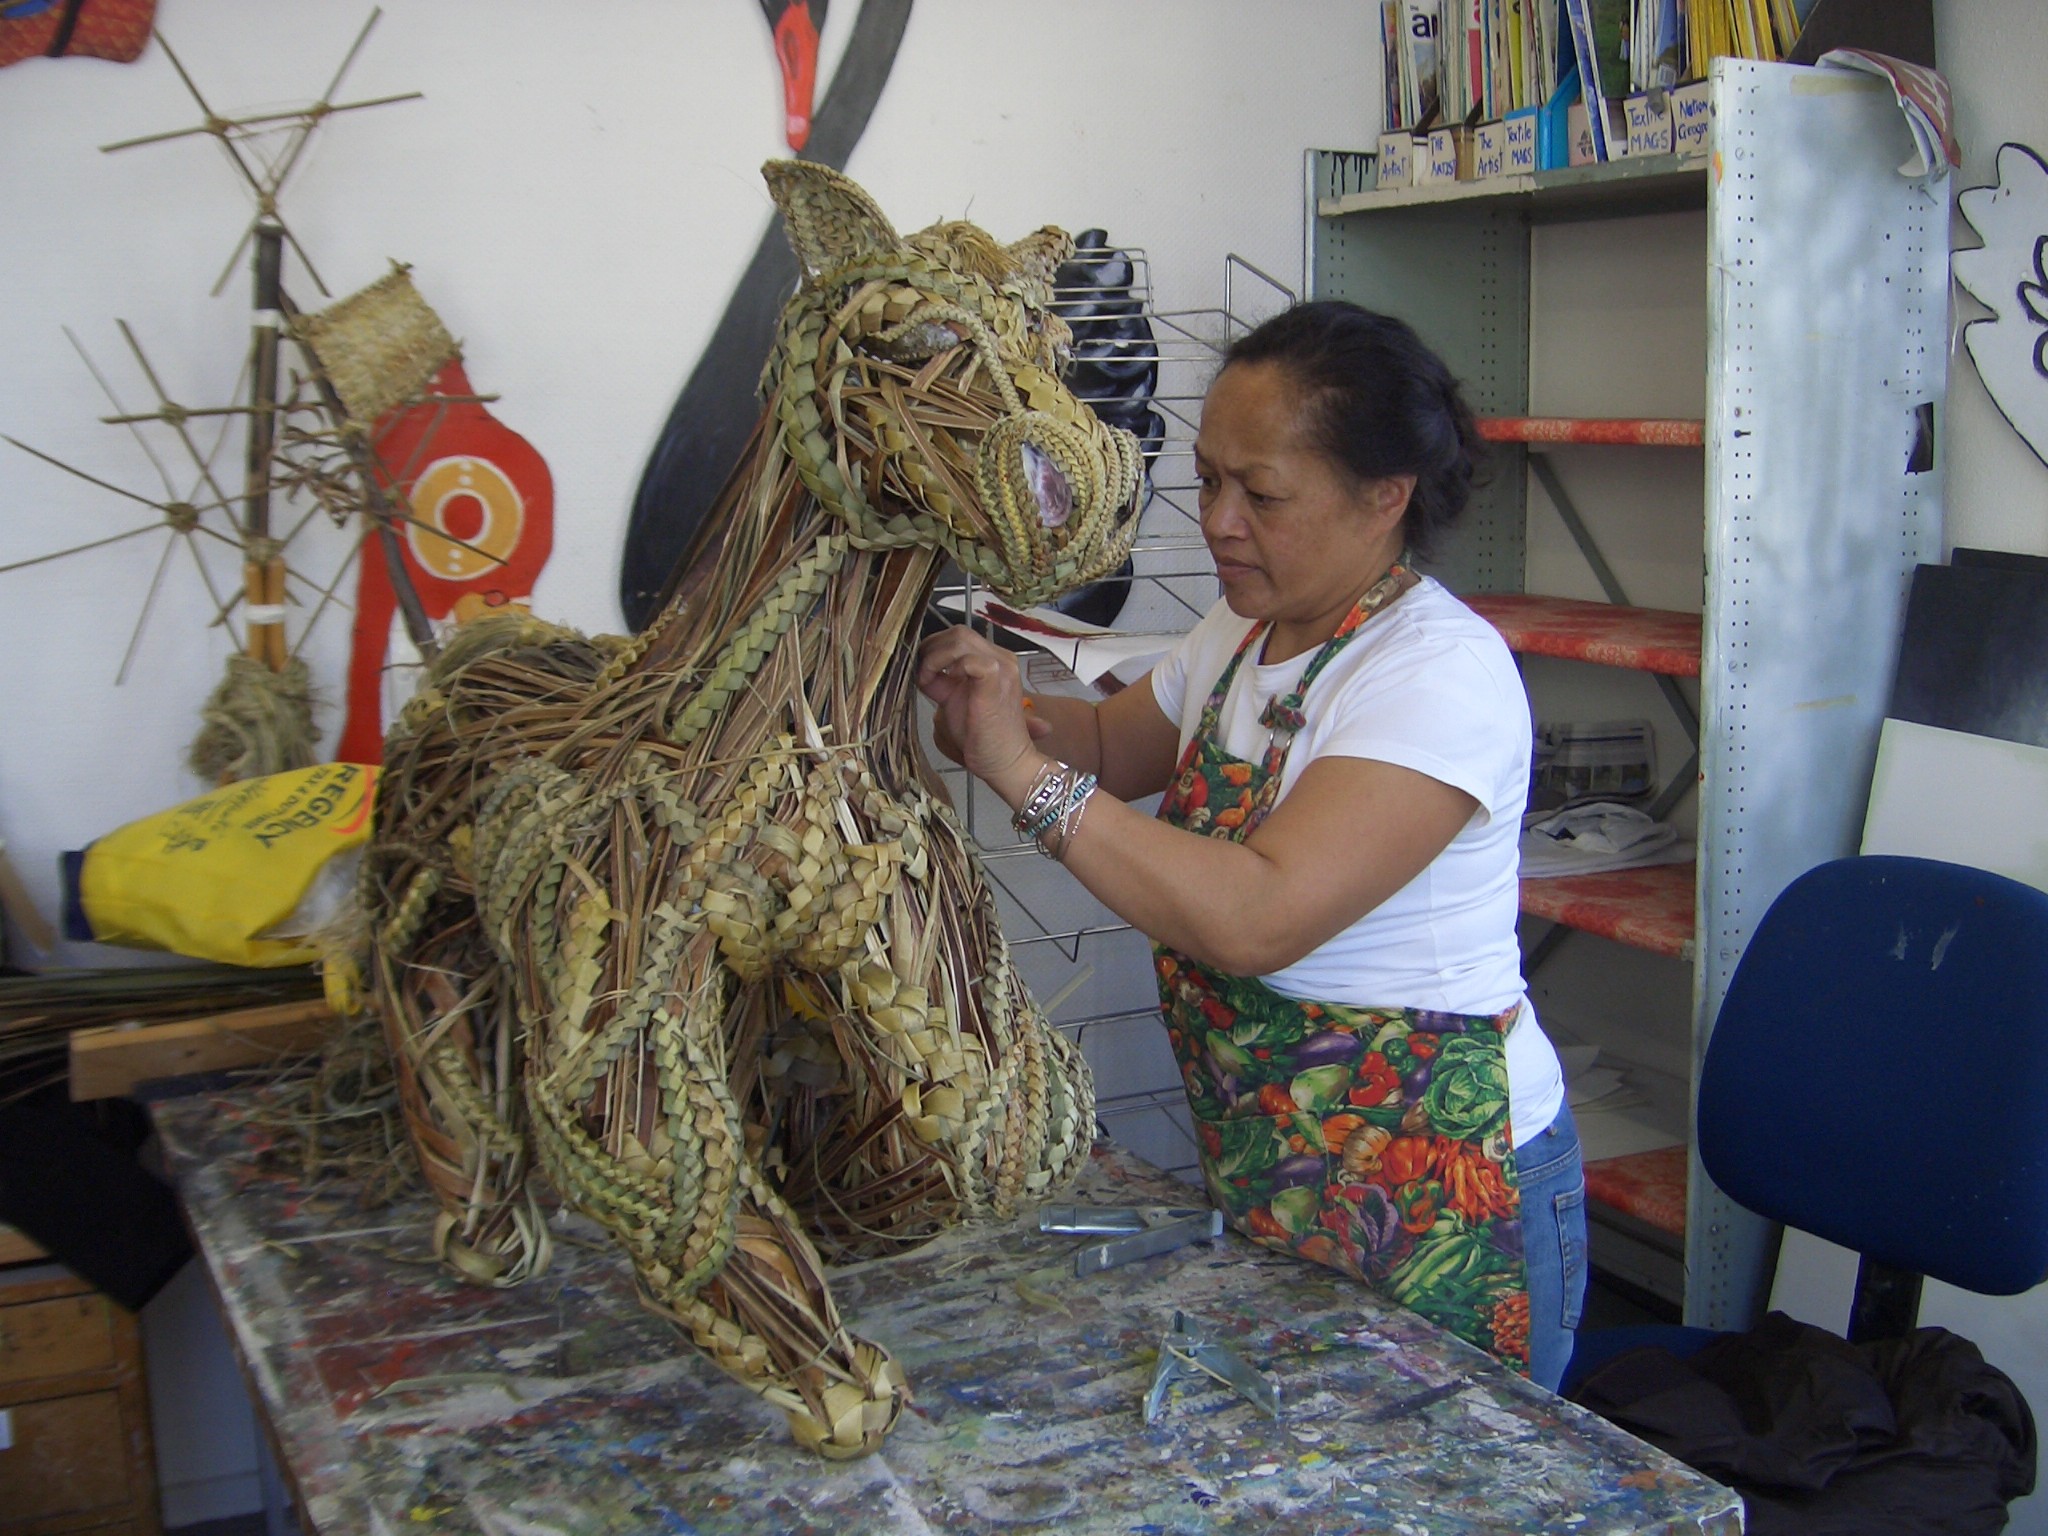 A Vincents Art Workshop artist at work